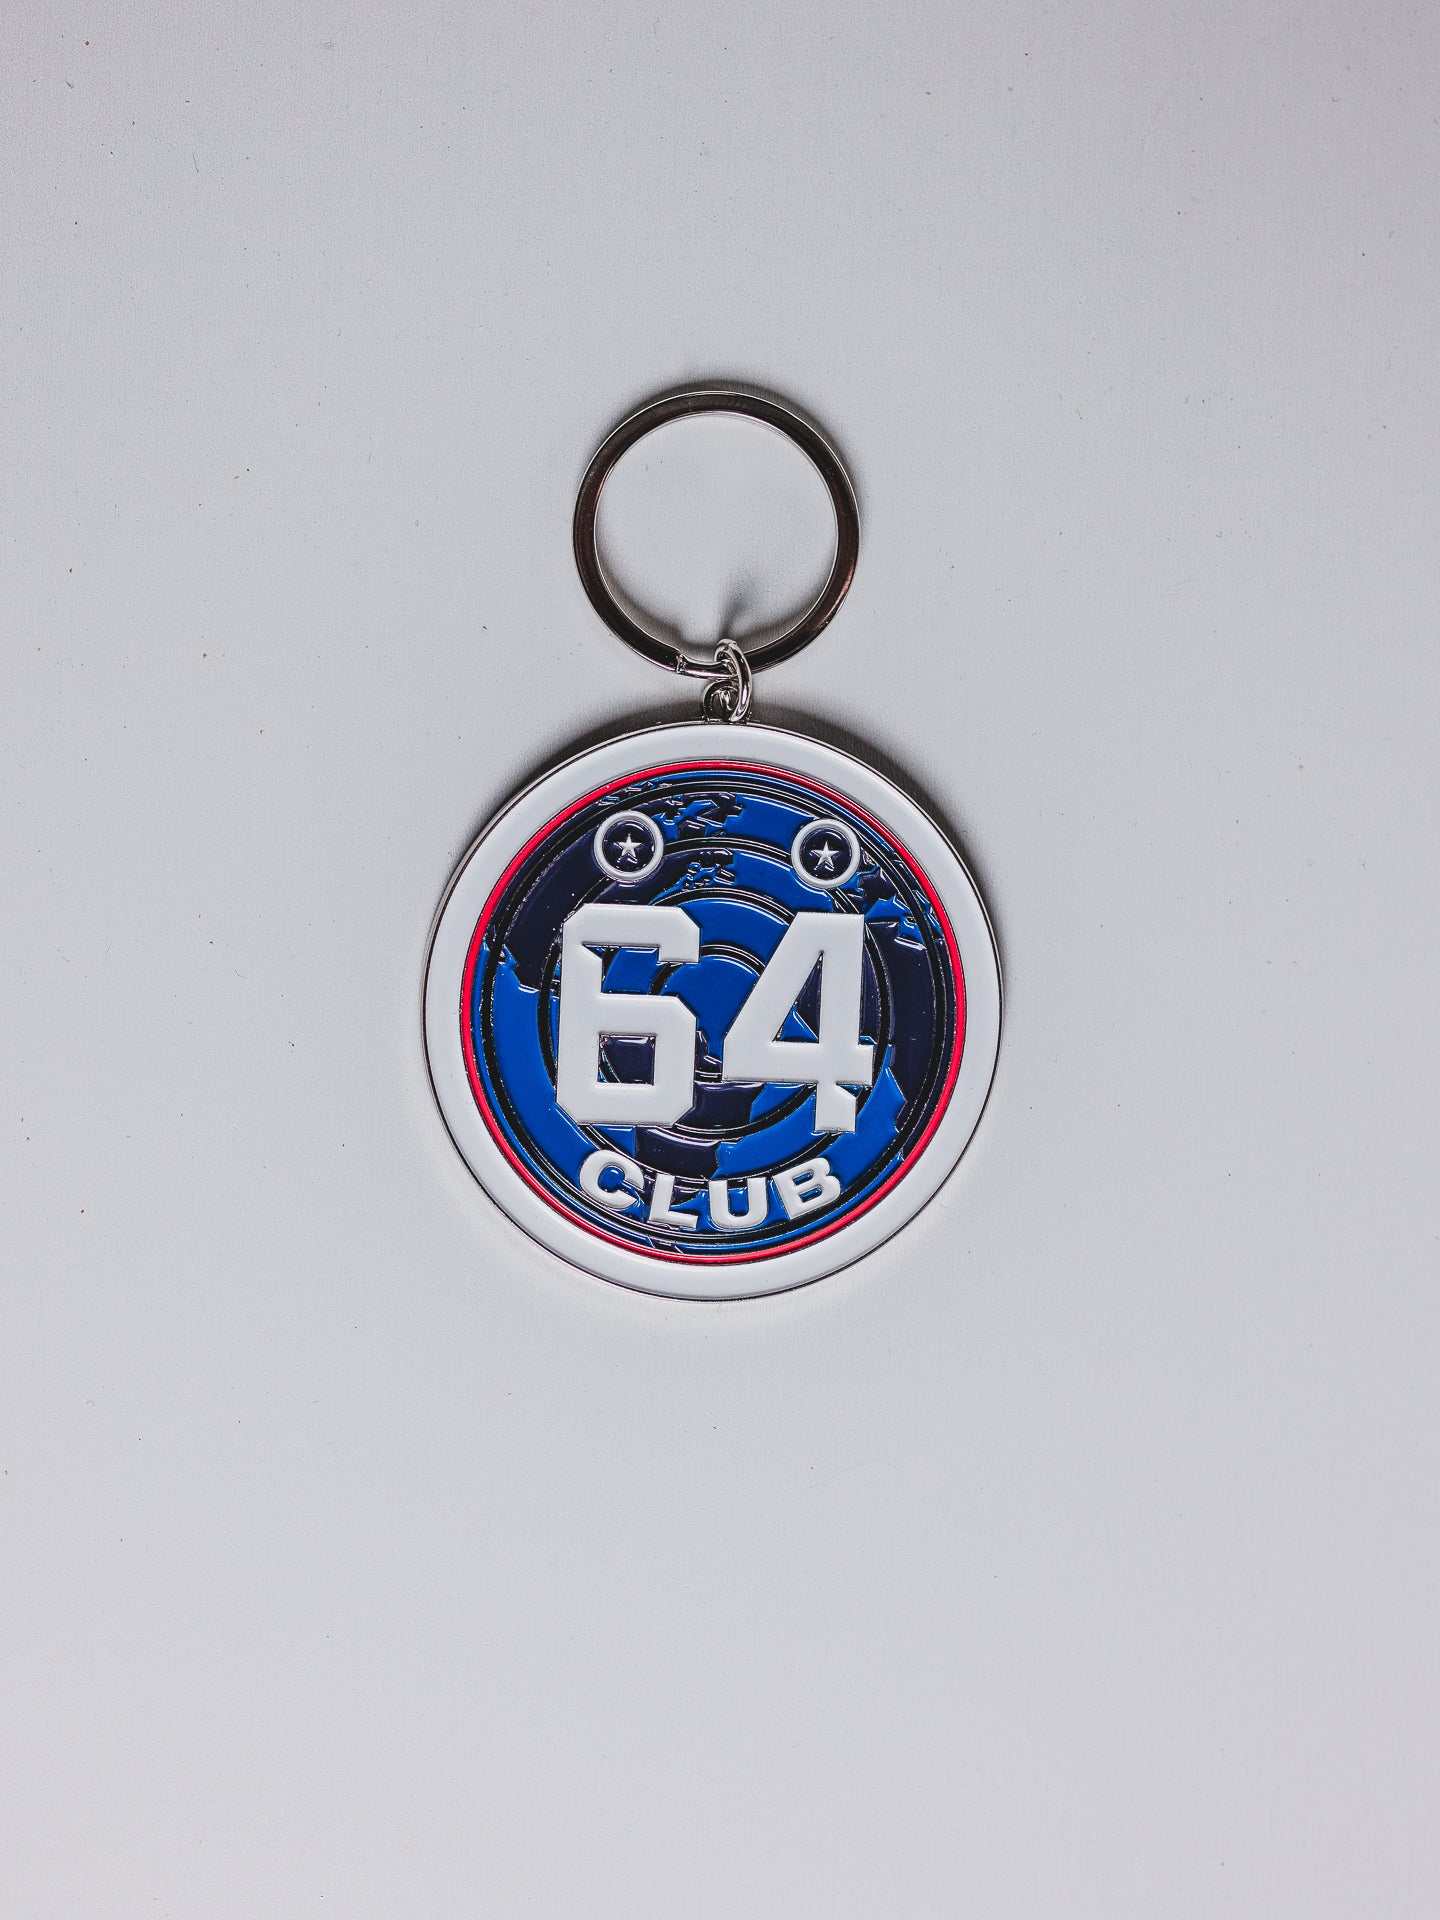 World Axe Throwing League (WATL) 64 club Keychain